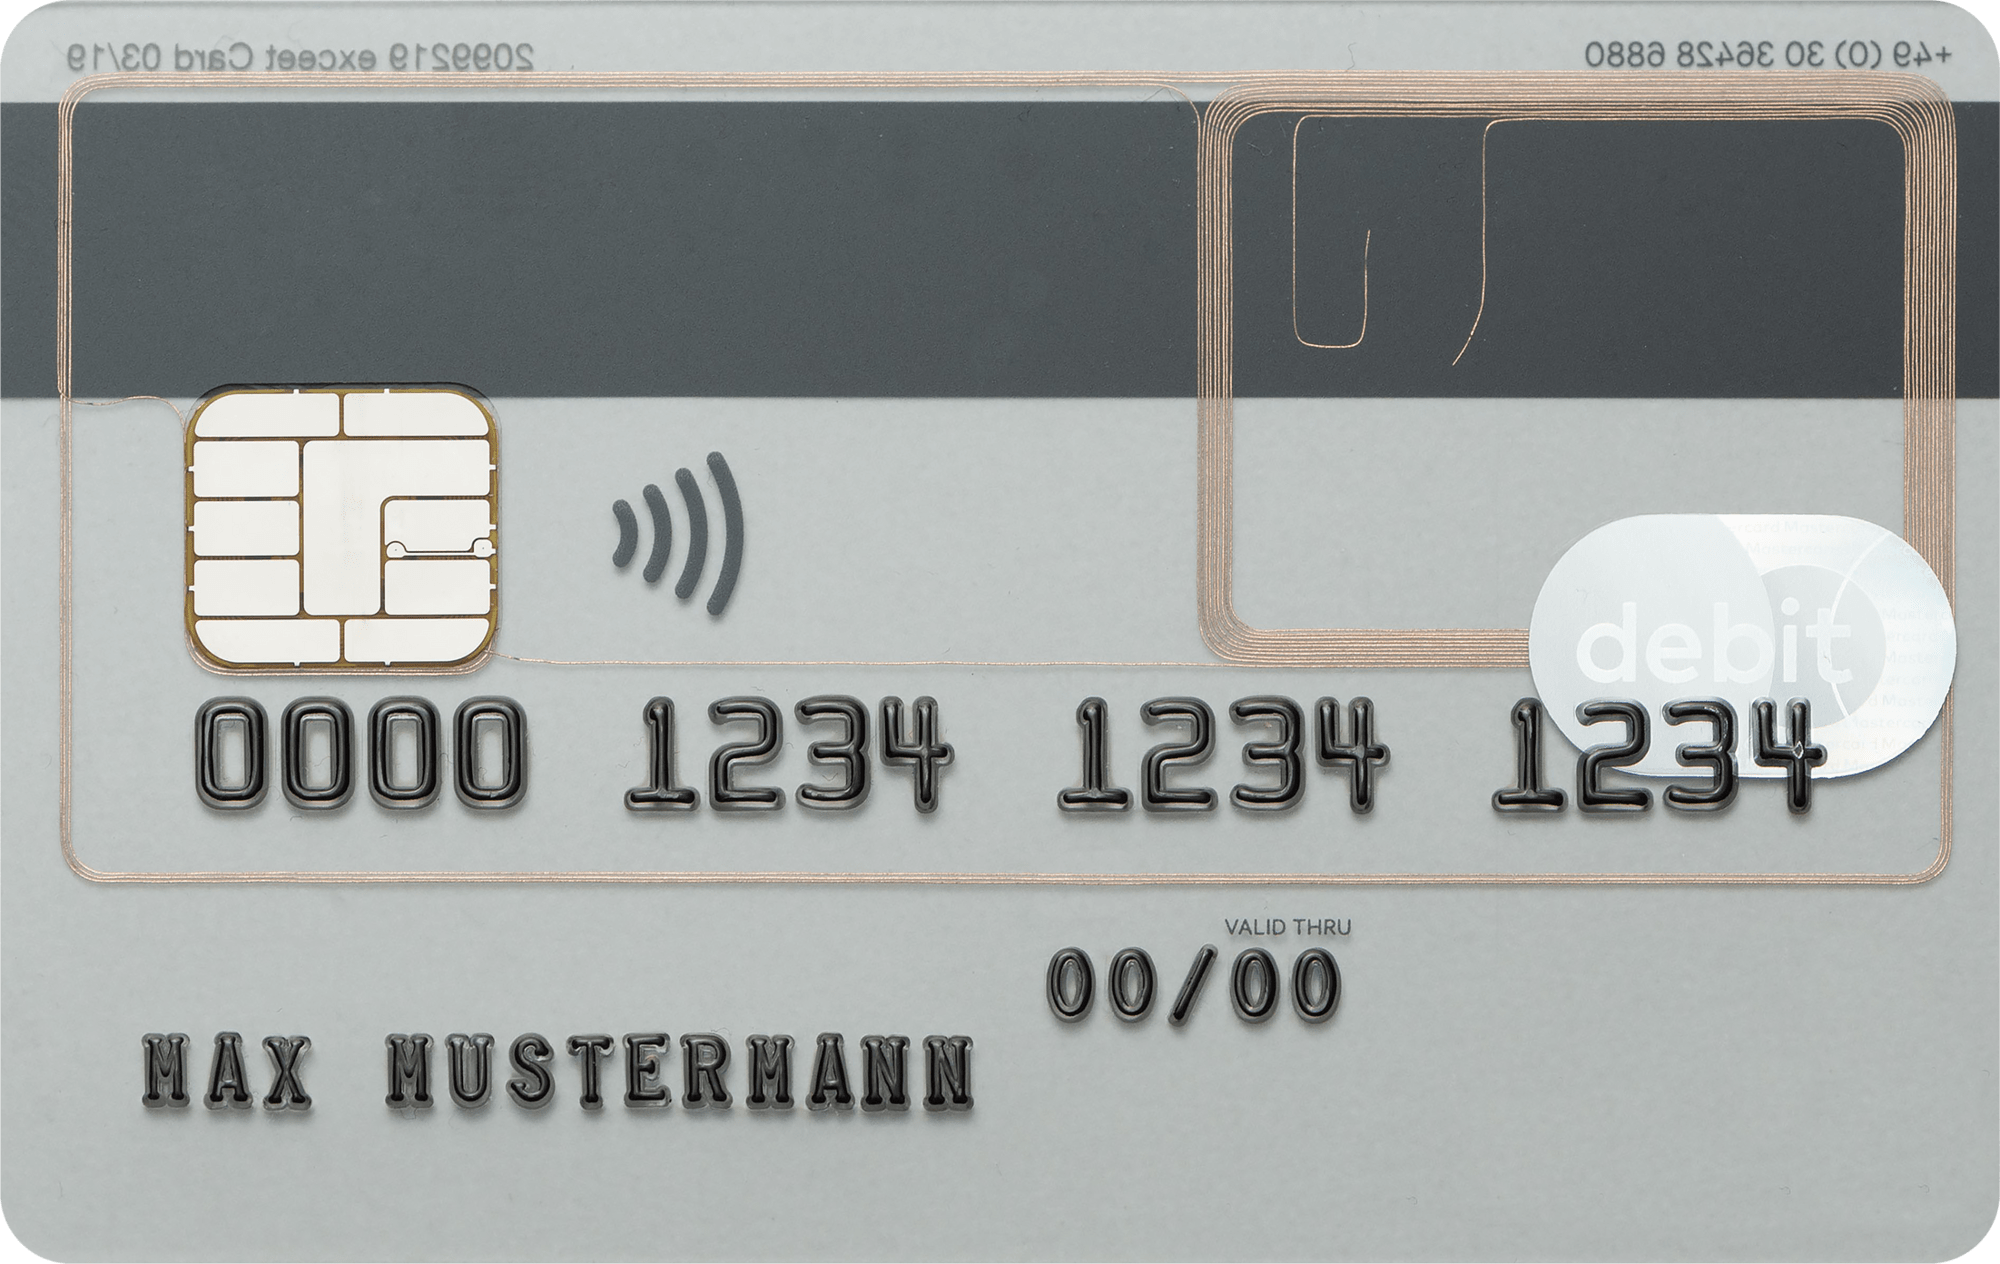 Dual Interface & Hybrid Karten - exceet Card Group - Kartensortiment